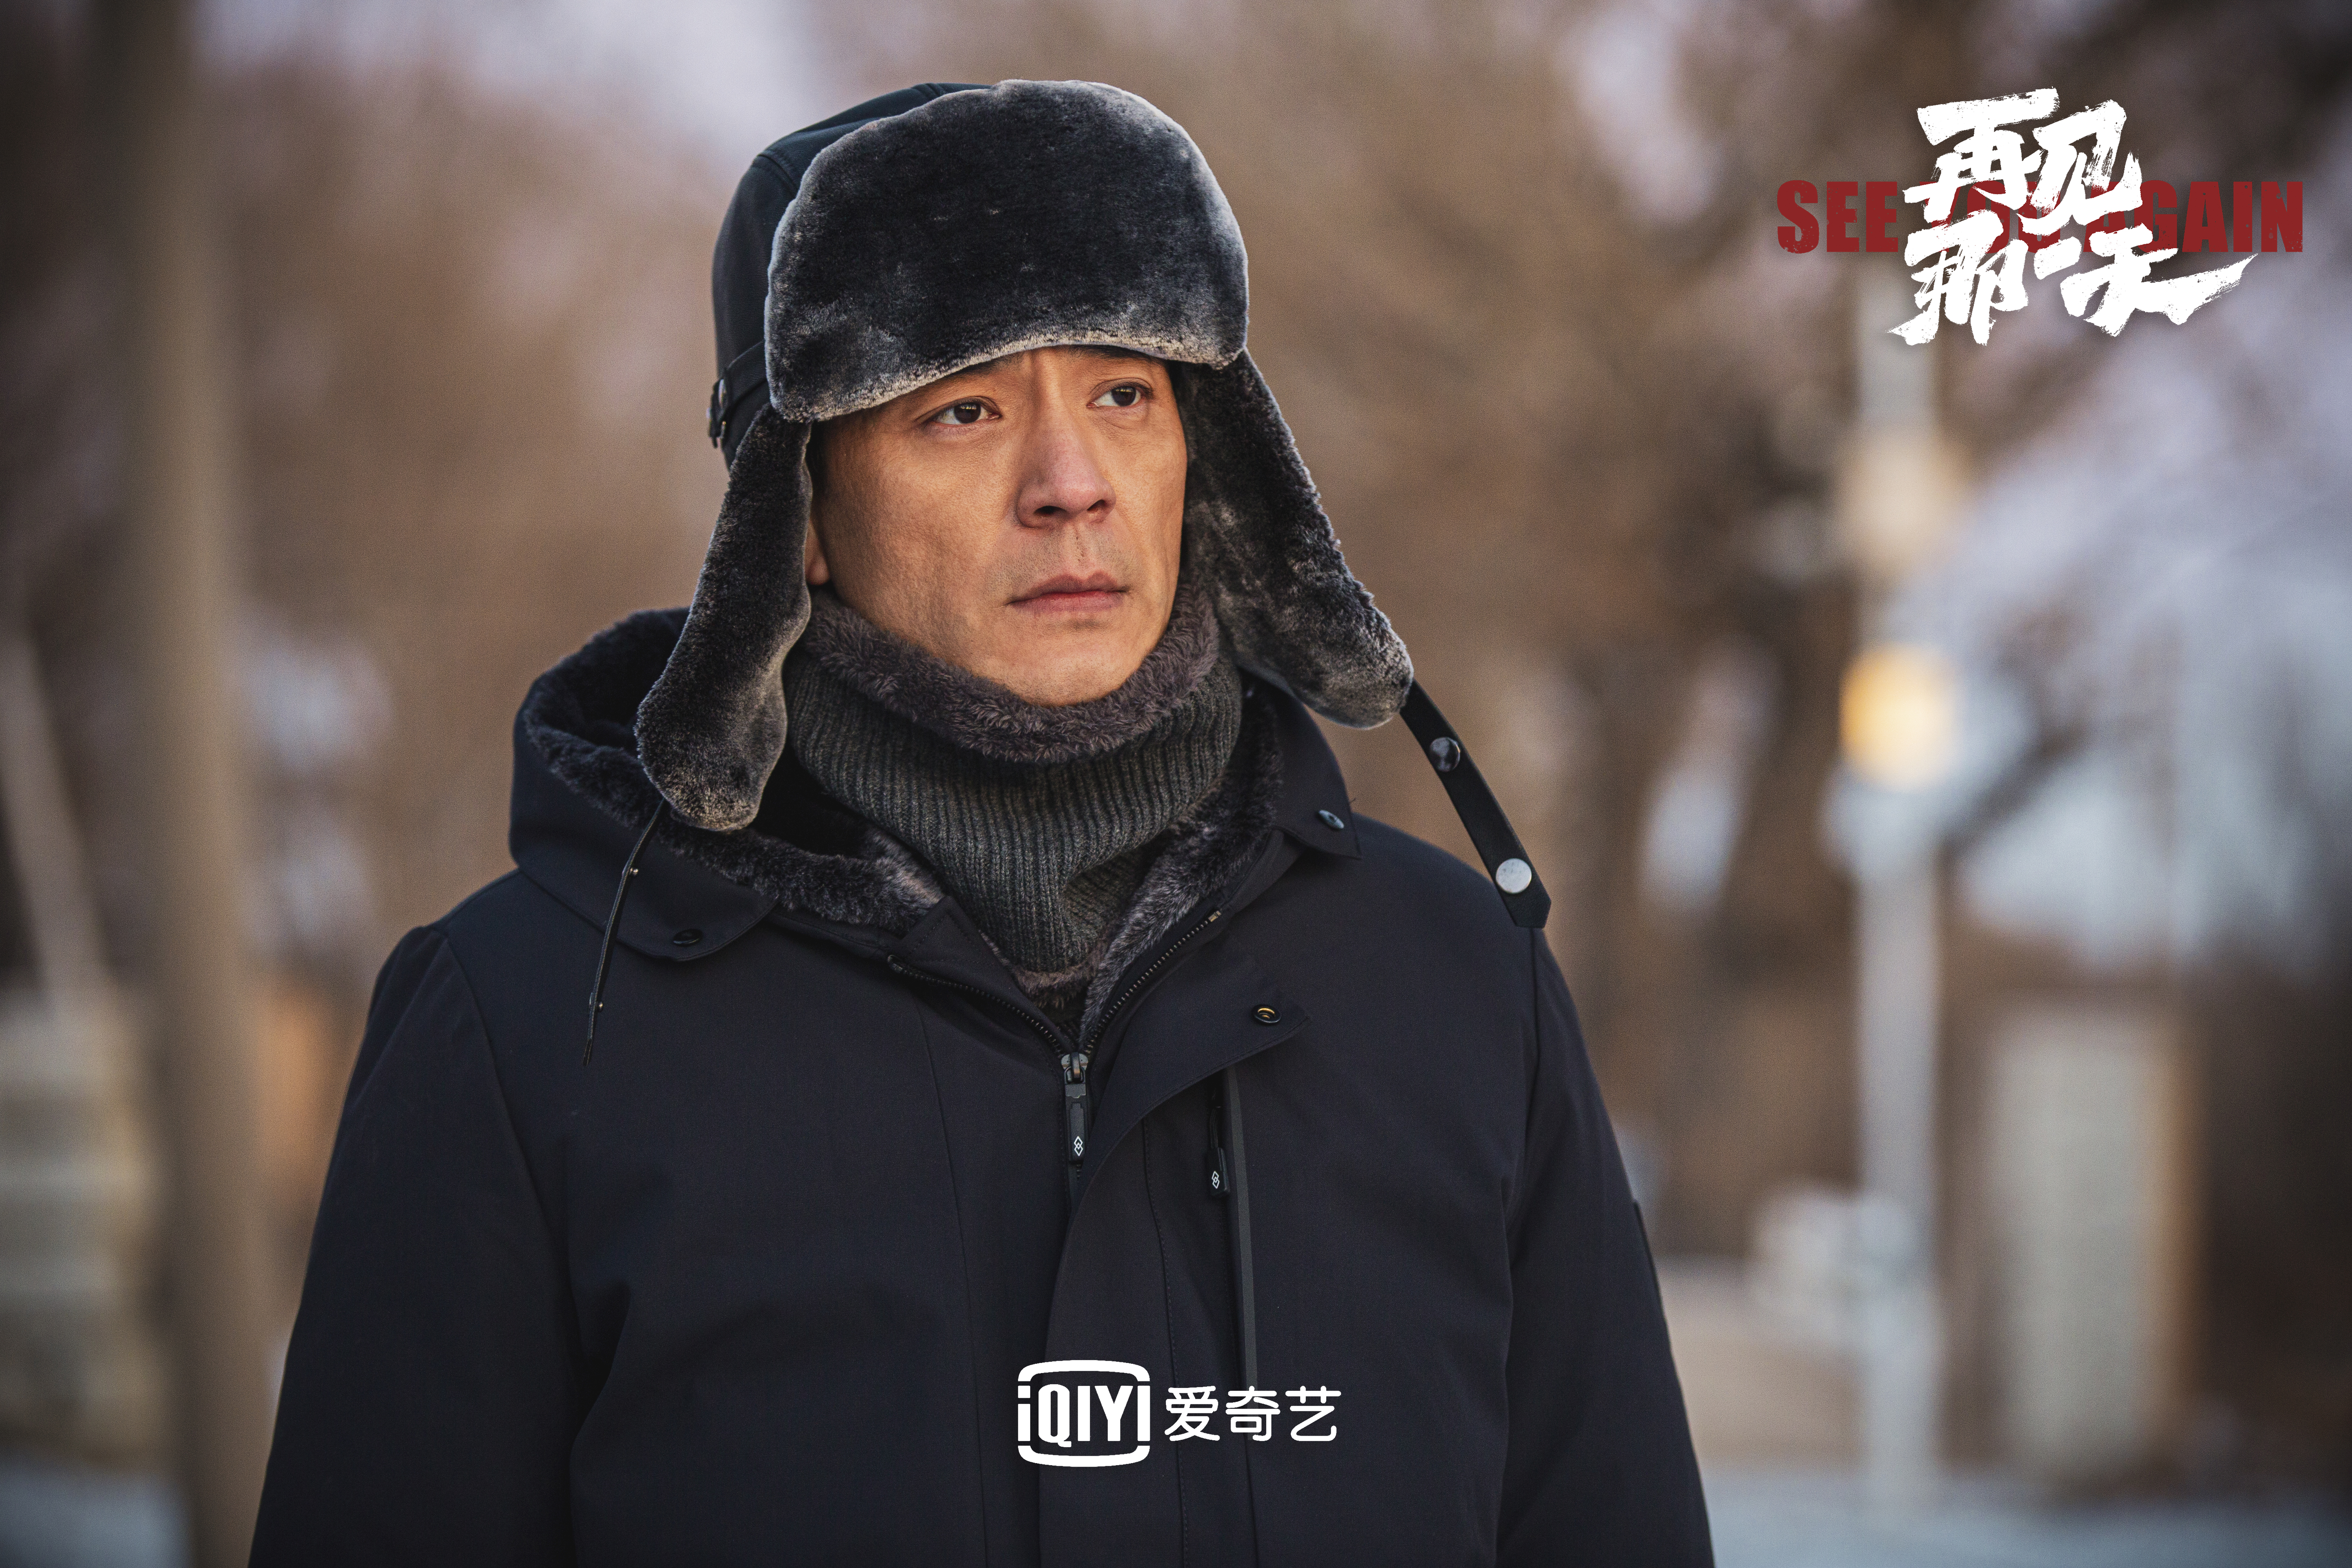 迷雾剧场的前导电影《再见那天》的定档李光洁蒋欣胡军向人民警察致敬。